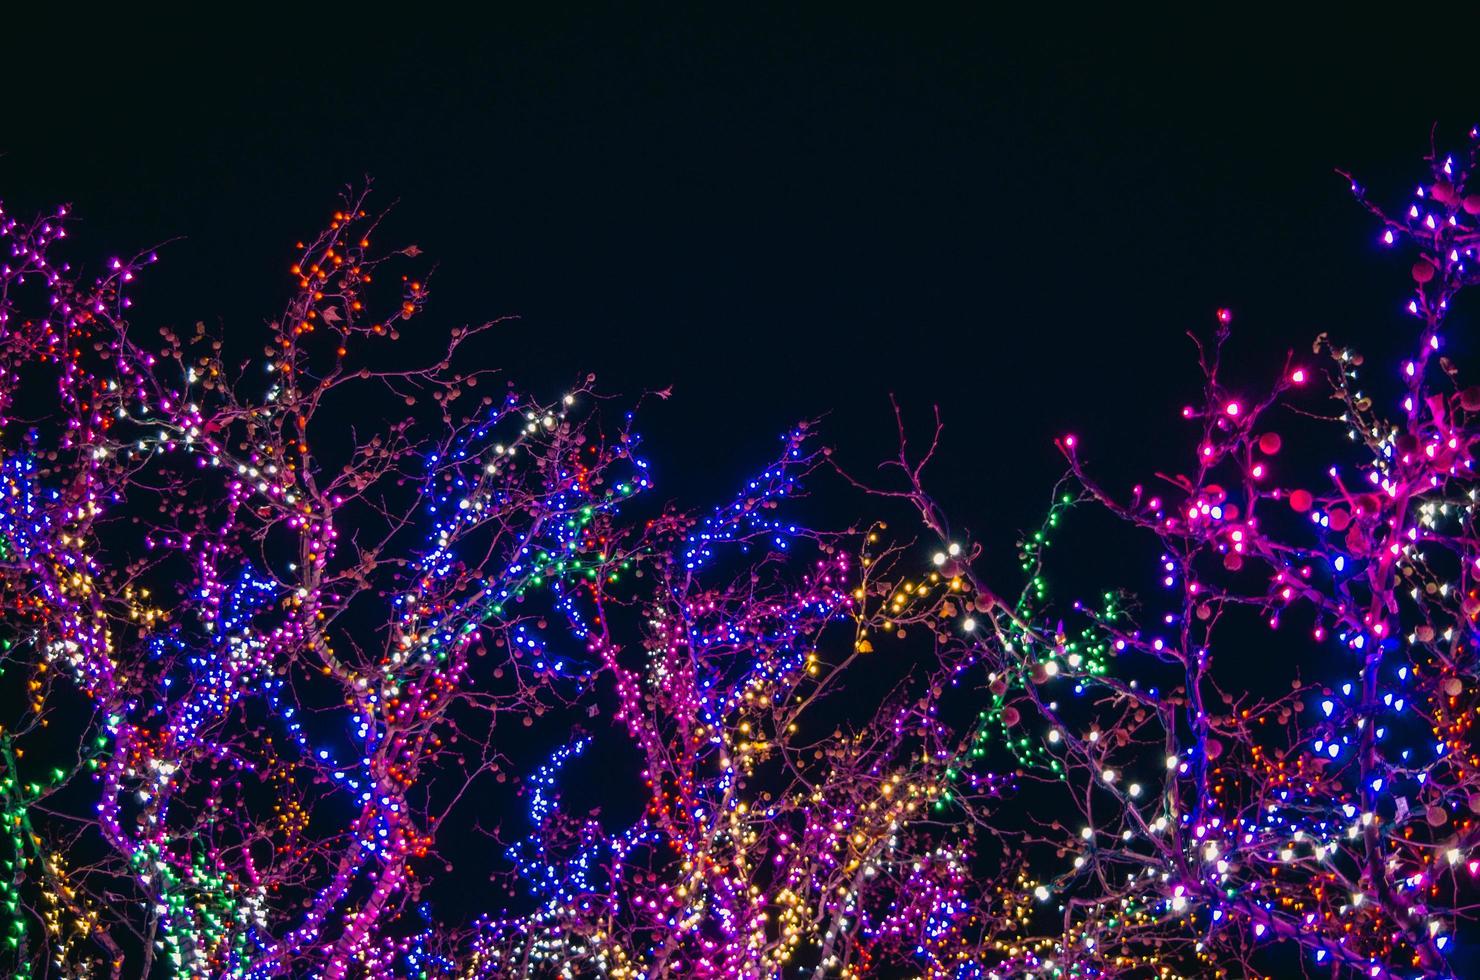 árboles cubiertos de luces de colores en la noche foto